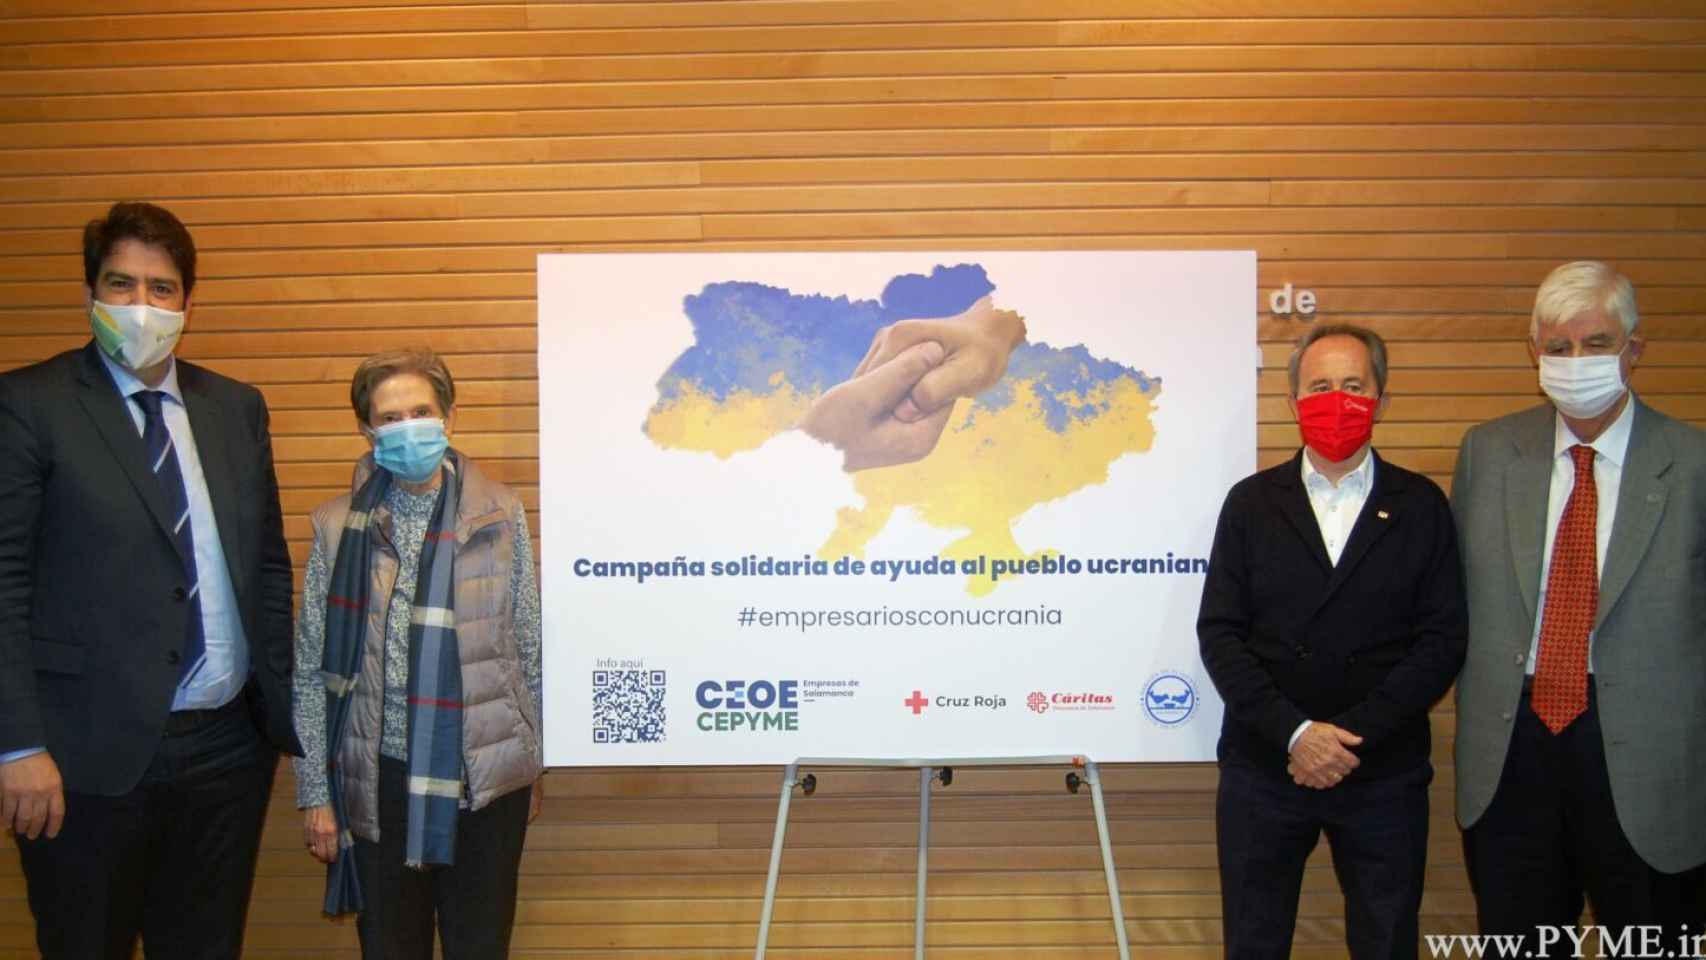 CEOE Cepyme, Cáritas, Cruz Roja y el Banco de Alimentos, en la presentación de la campaña